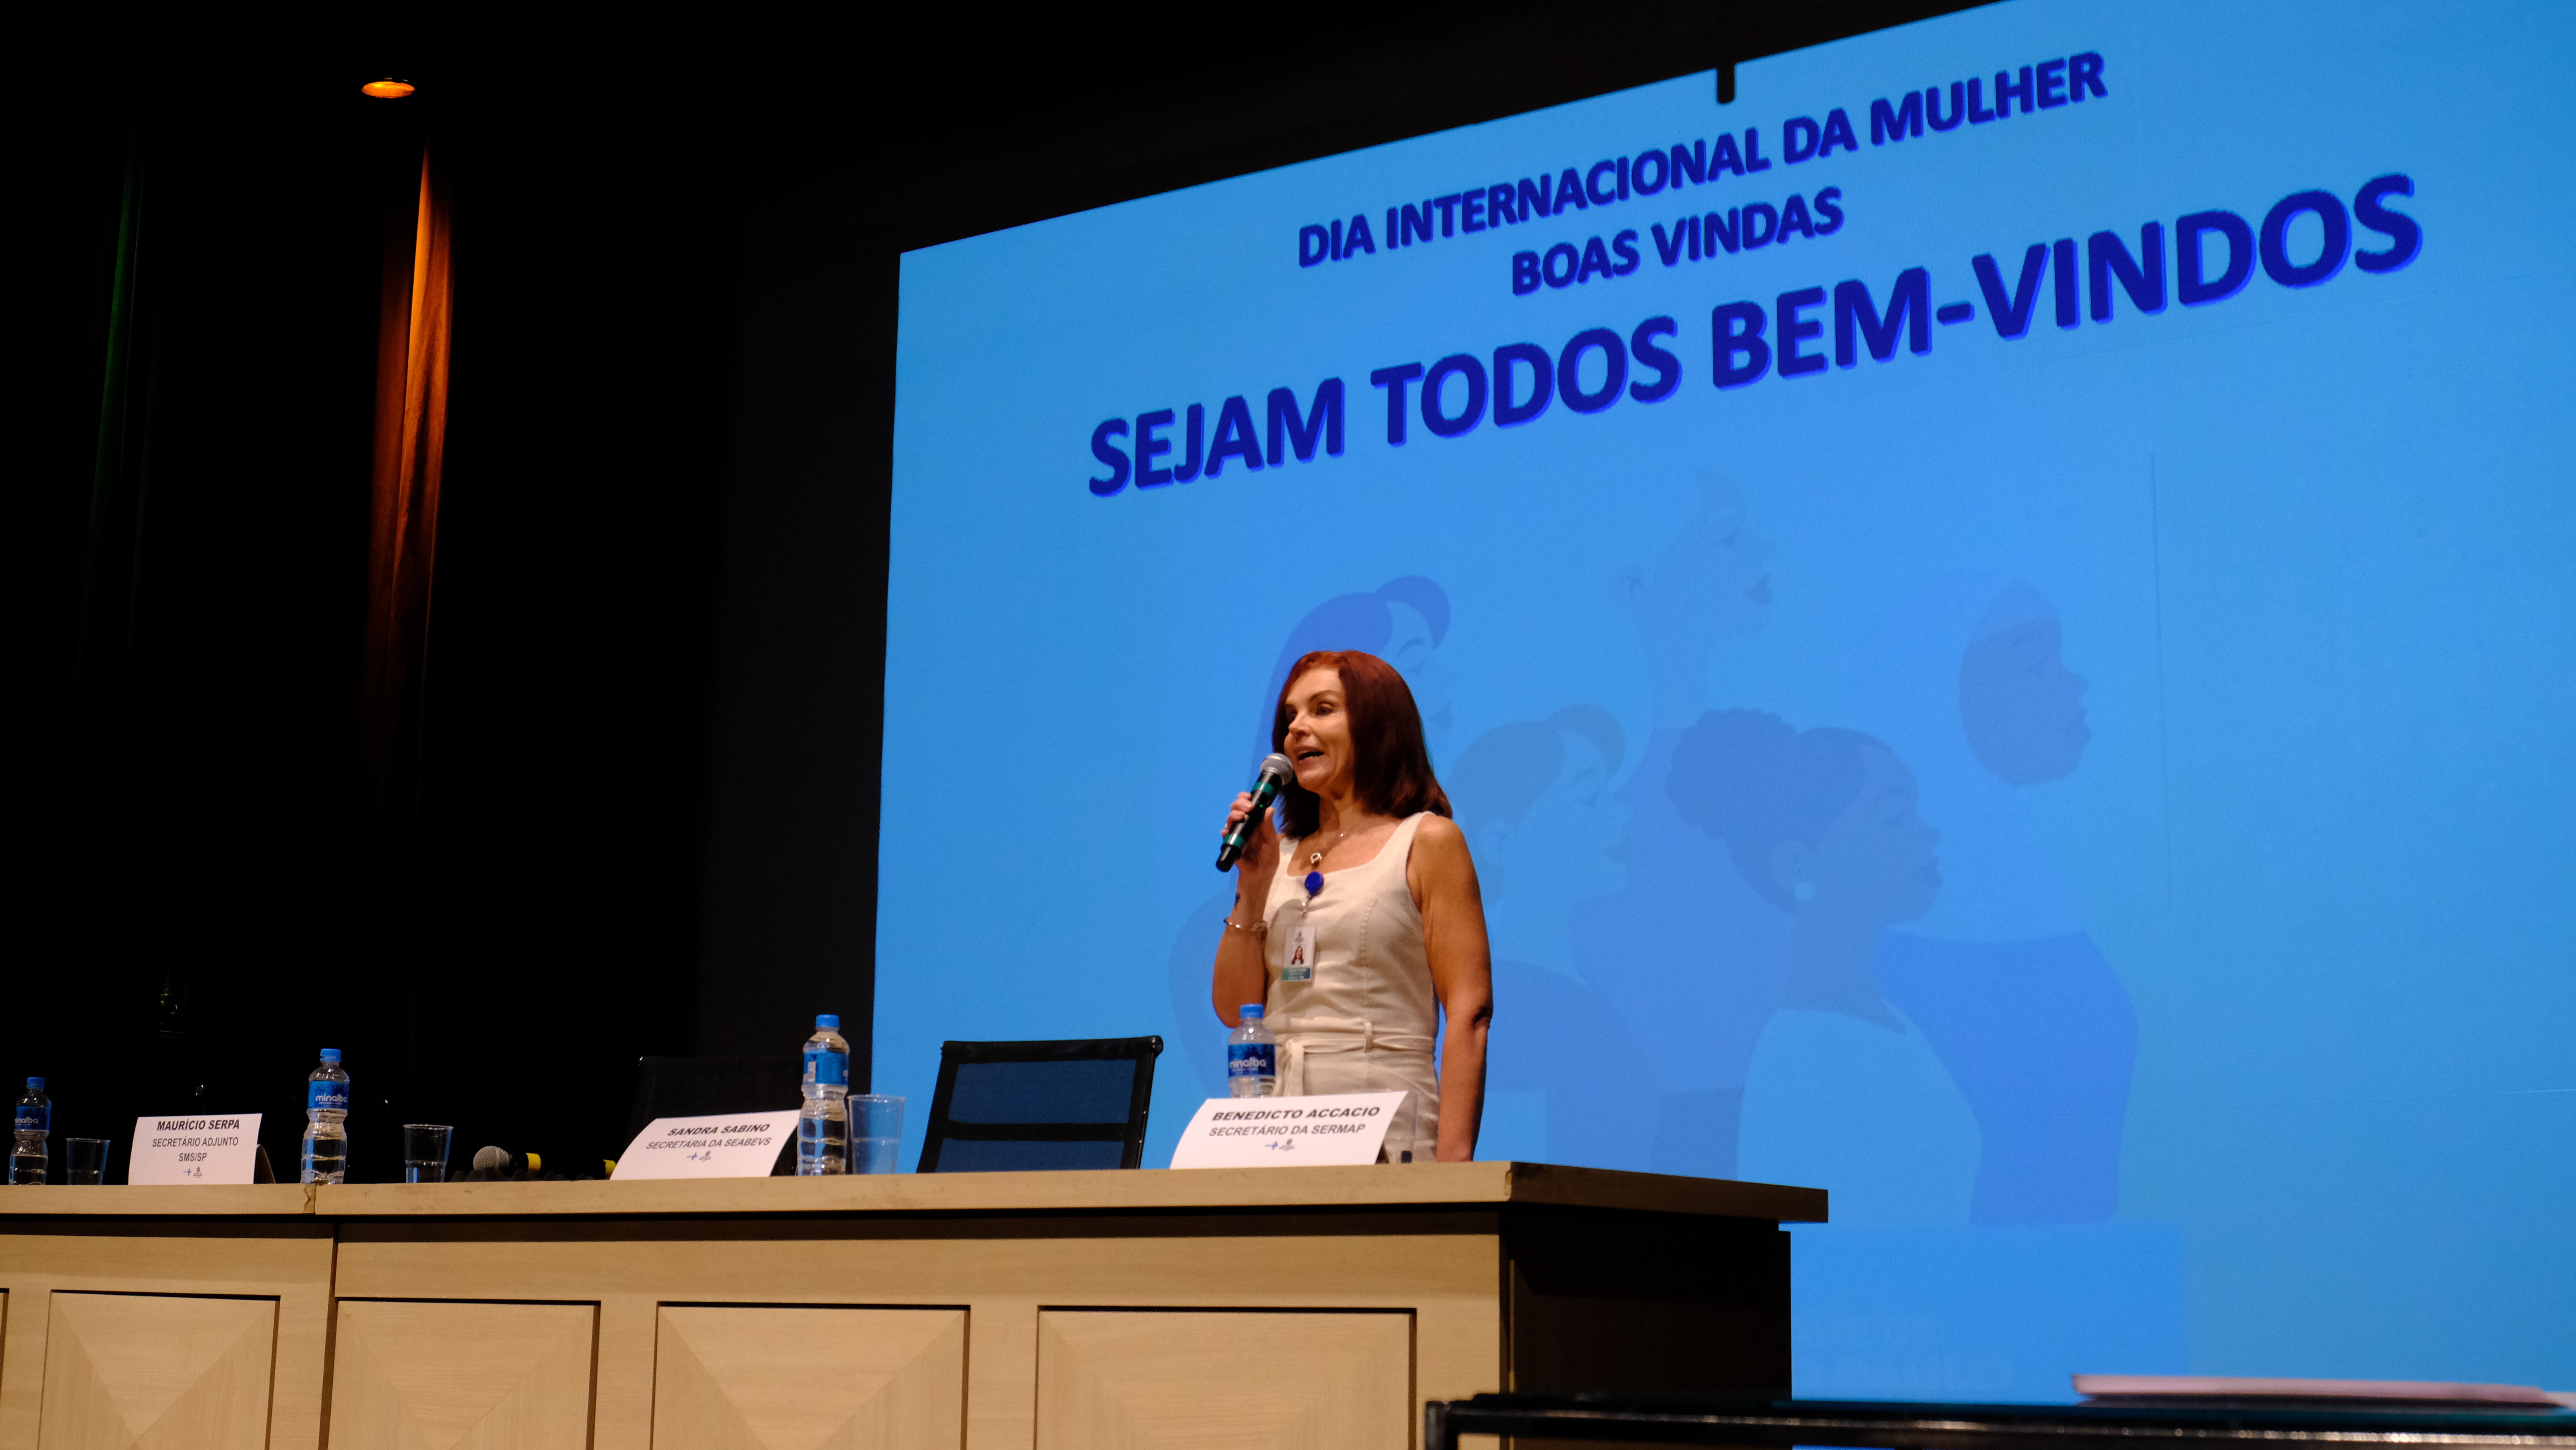 A Coordenadora de Gestão de Pessoas, Patrícia Pallota, está em pé no centro da imagem falando ao público do evento